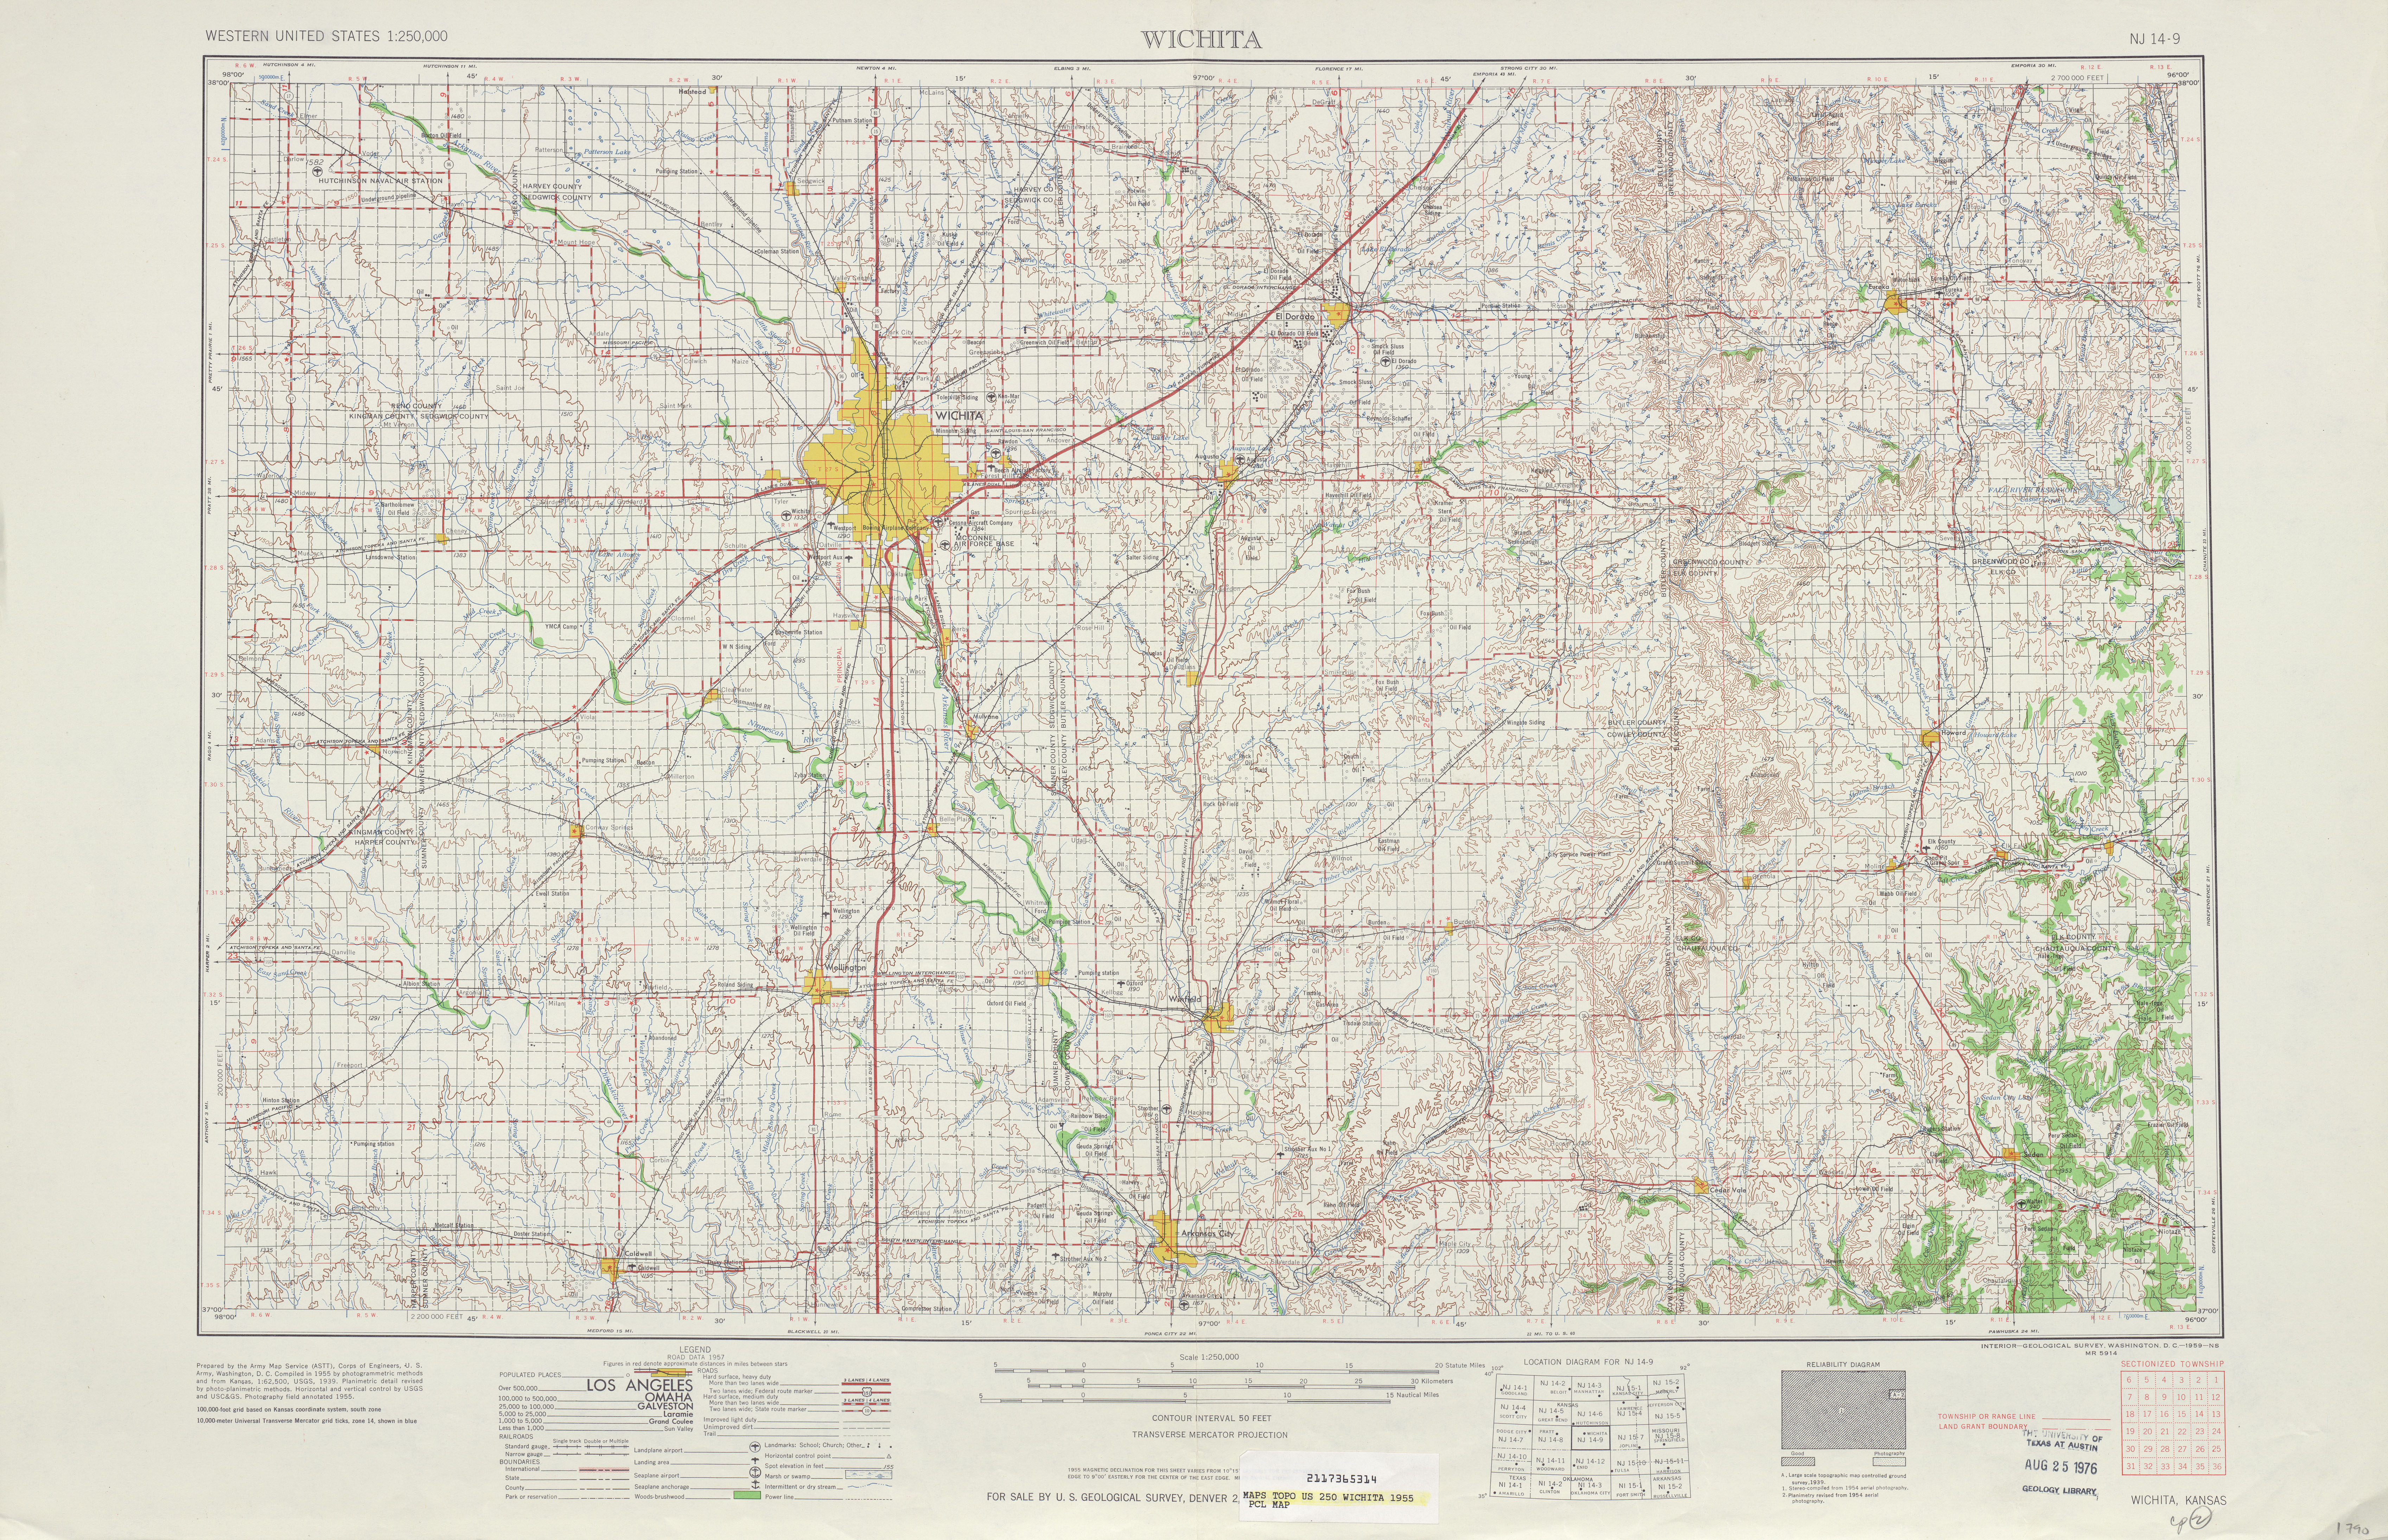 Hoja Wichita del Mapa Topográfico de los Estados Unidos 1955